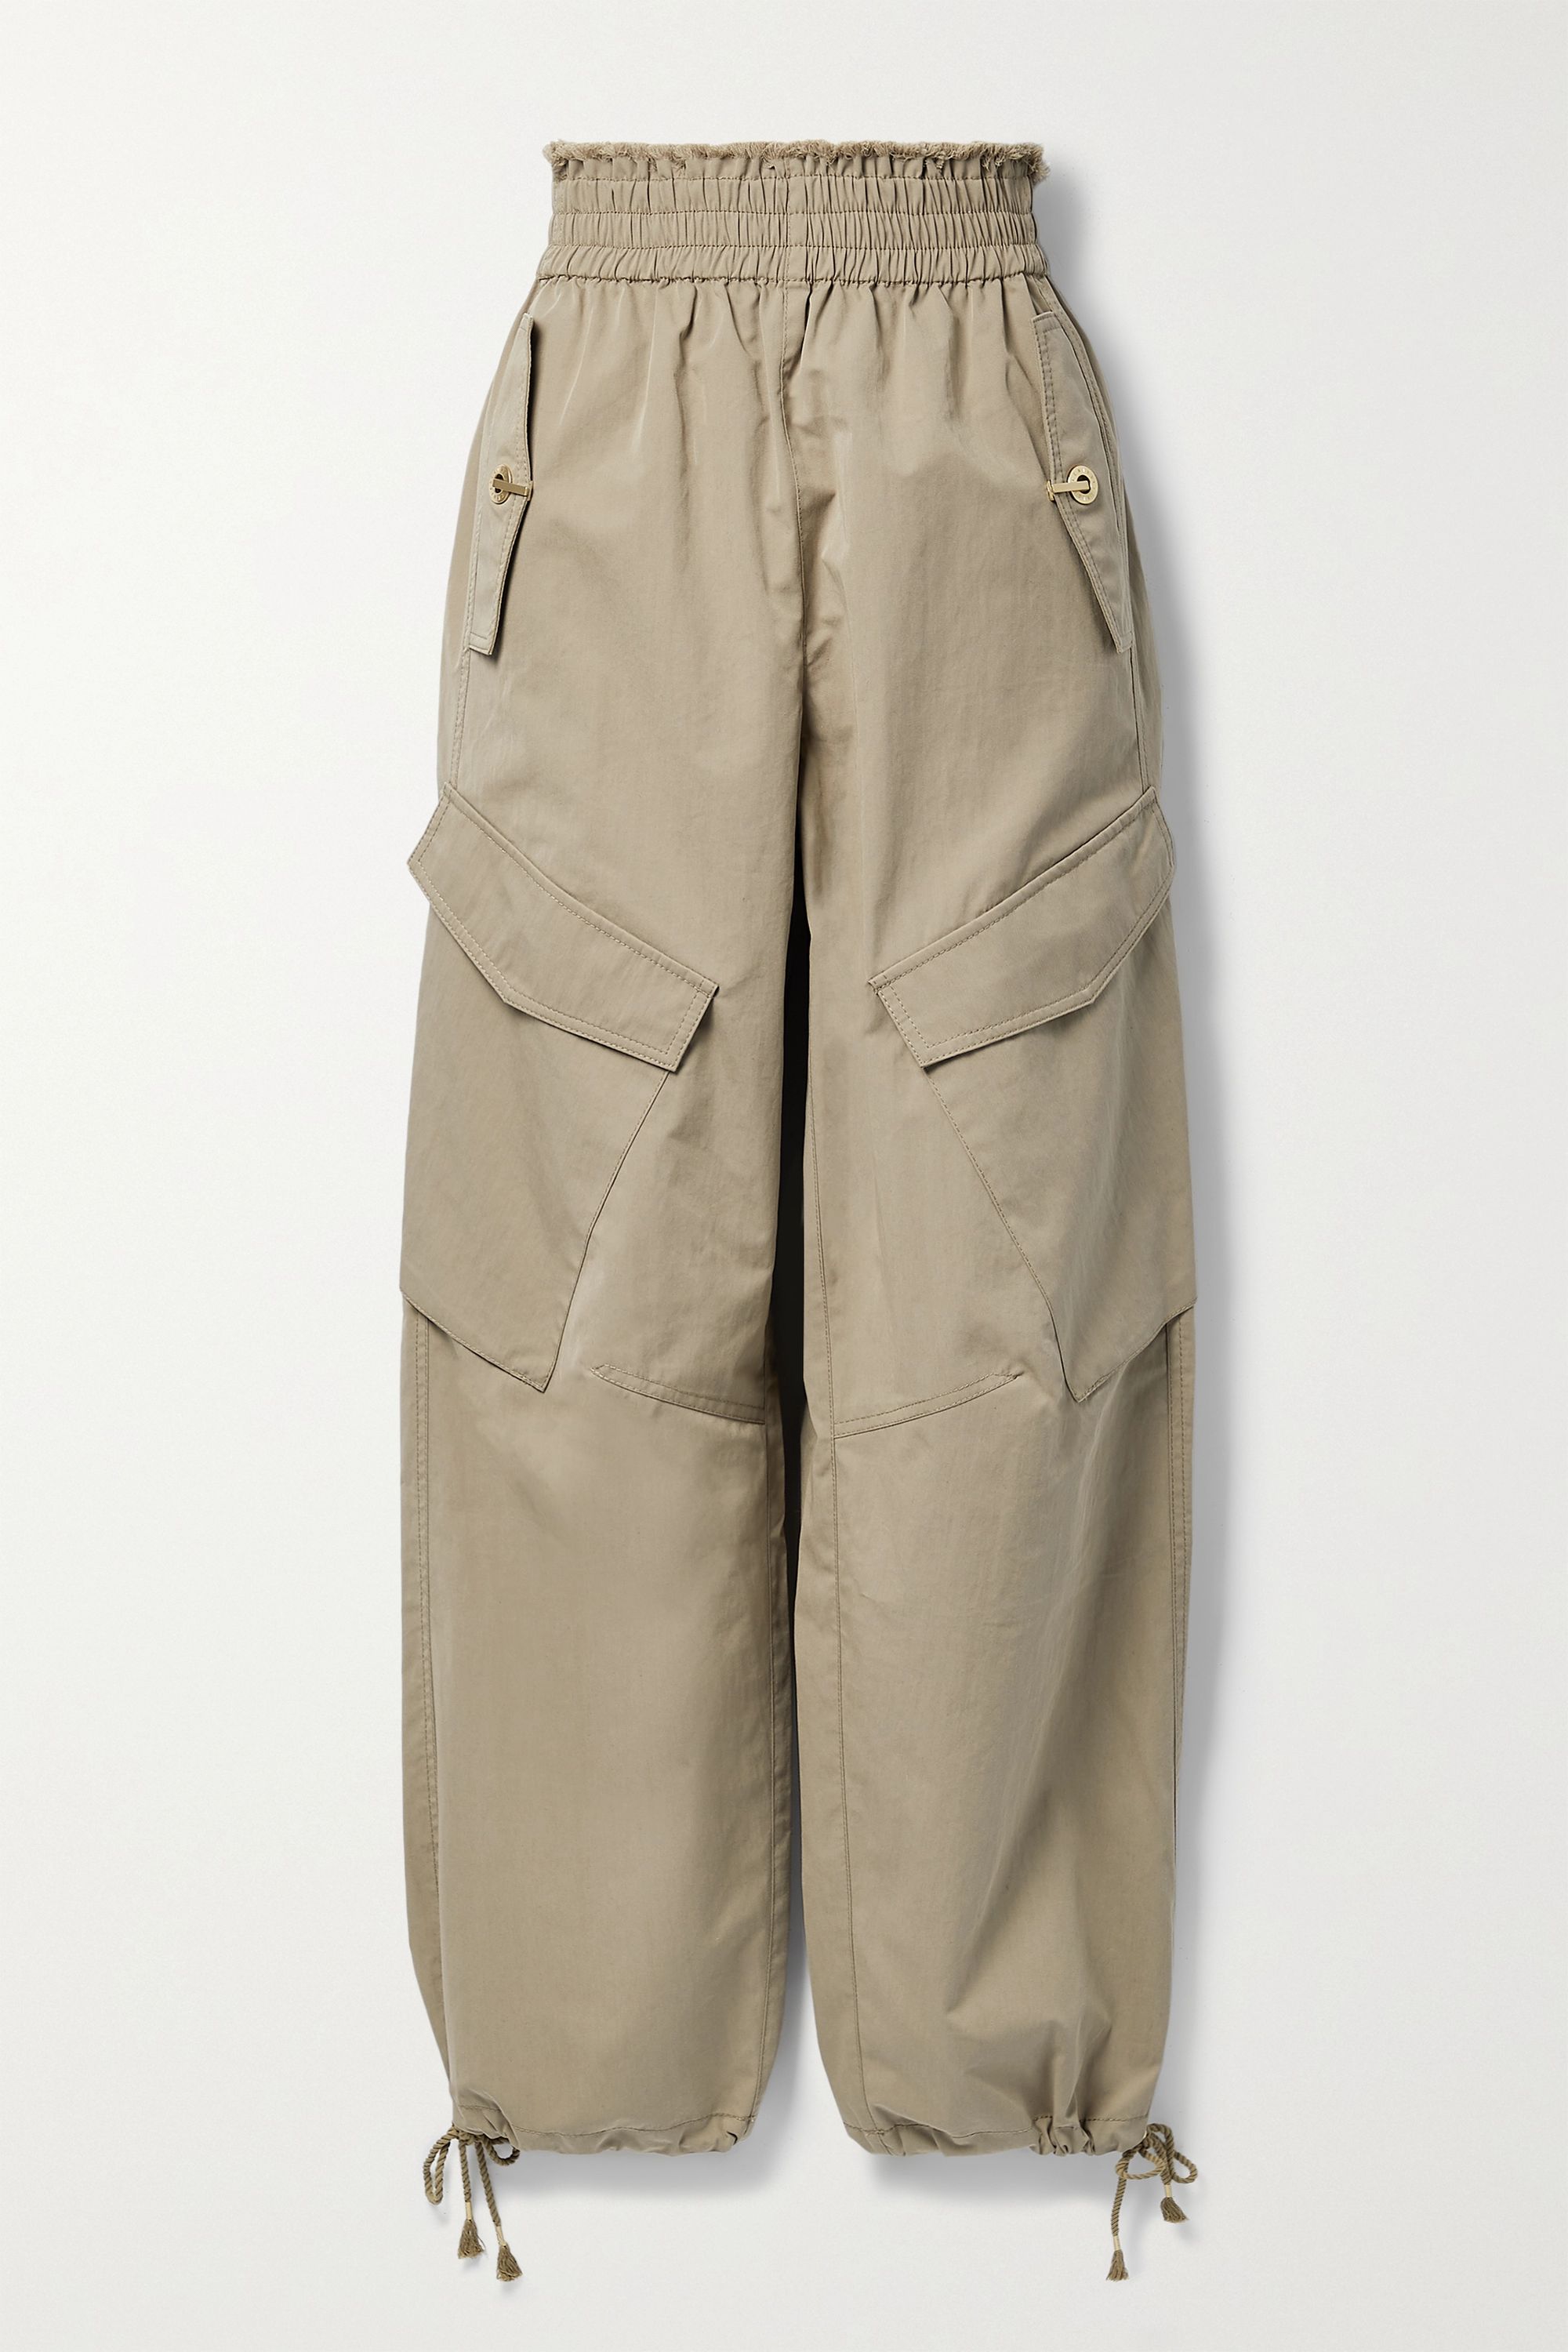 Este invierno necesitamos unos pantalones cargo porque son tendencia y son  muy prácticos por sus bolsillos